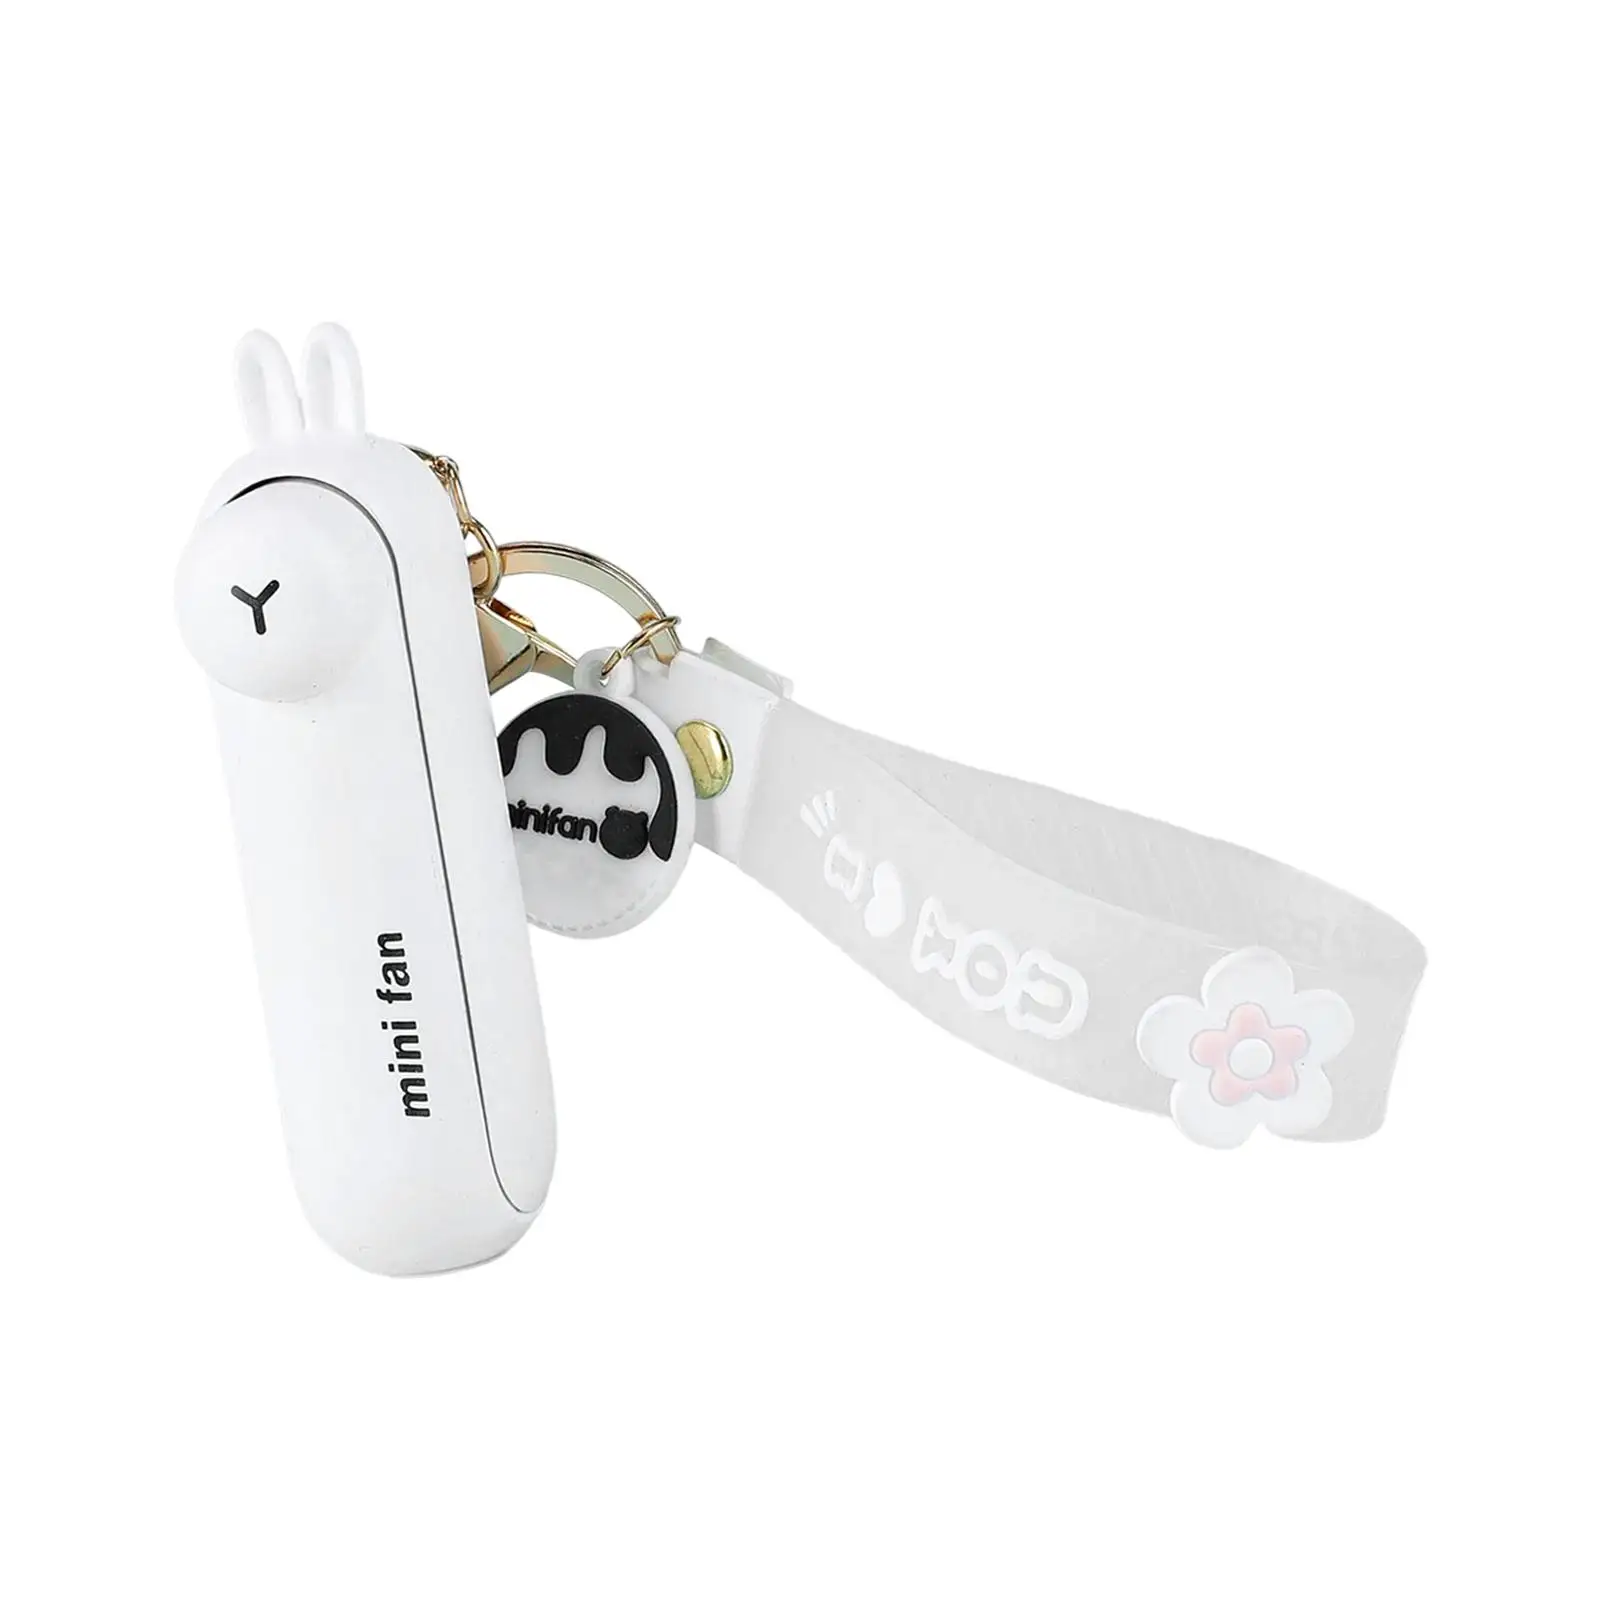 Keychain Fan Mini Fan USB Rechargeable with 3 Speeds Cooling Fan Folding Personal Fan for Office Indoor Outdoor